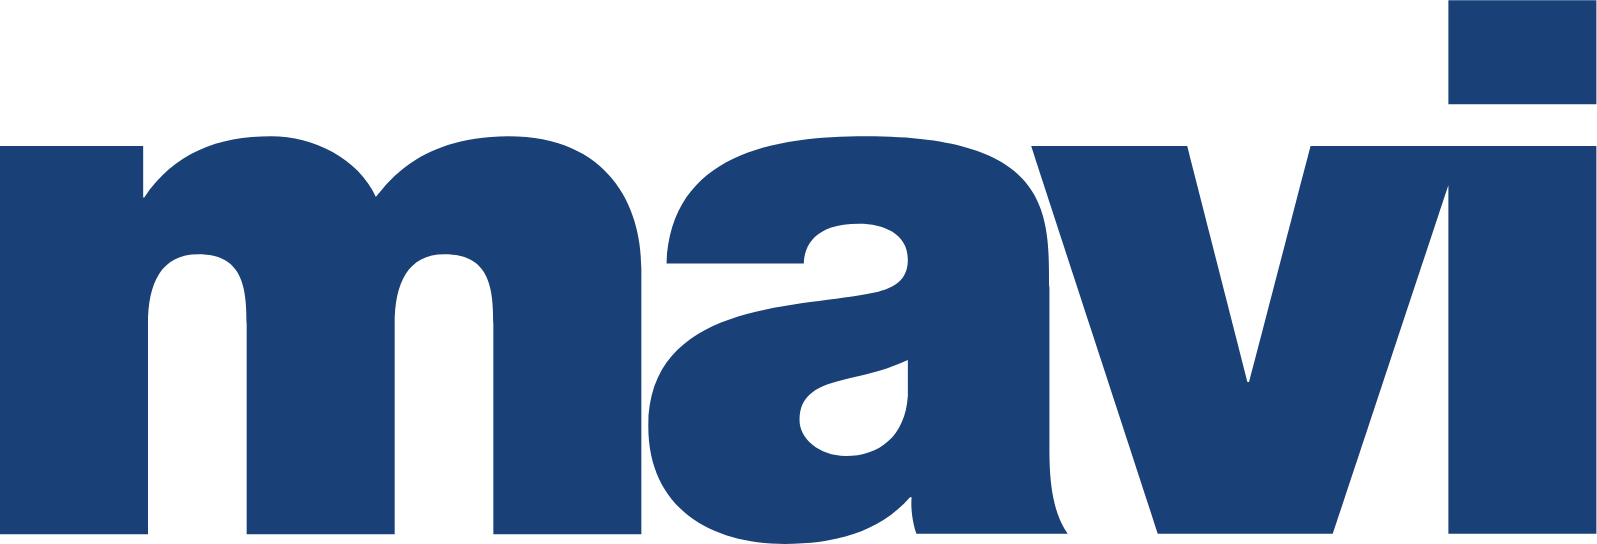 Mavi Giyim Sanayi ve Ticaret logo (PNG transparent)